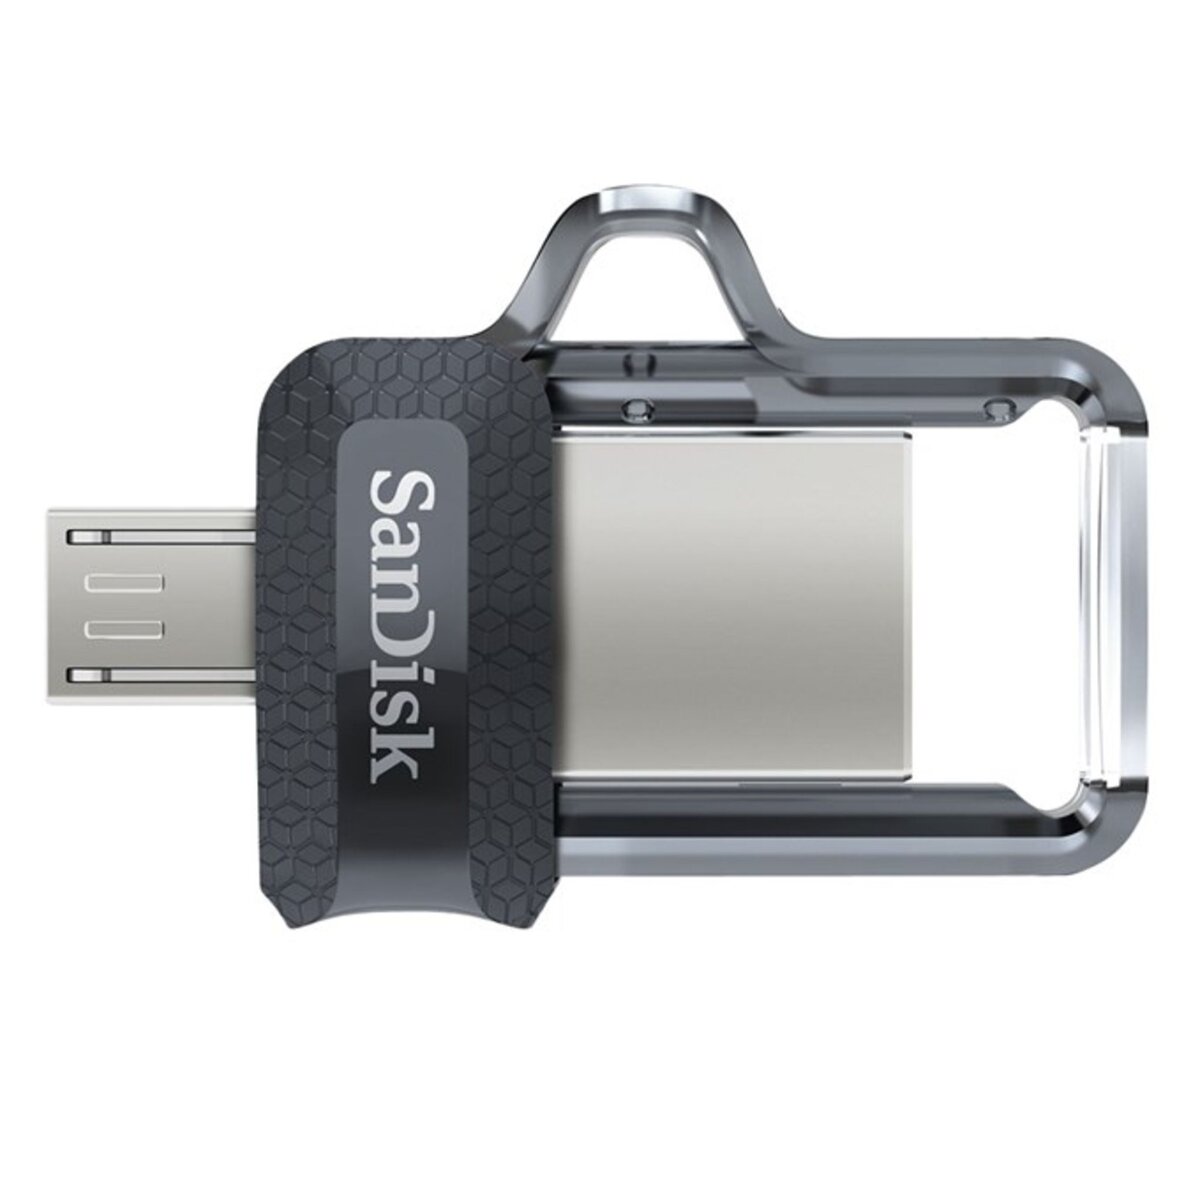 Clé micro USB Dual Drive m3.0 128 Go SANDISK à Prix Carrefour